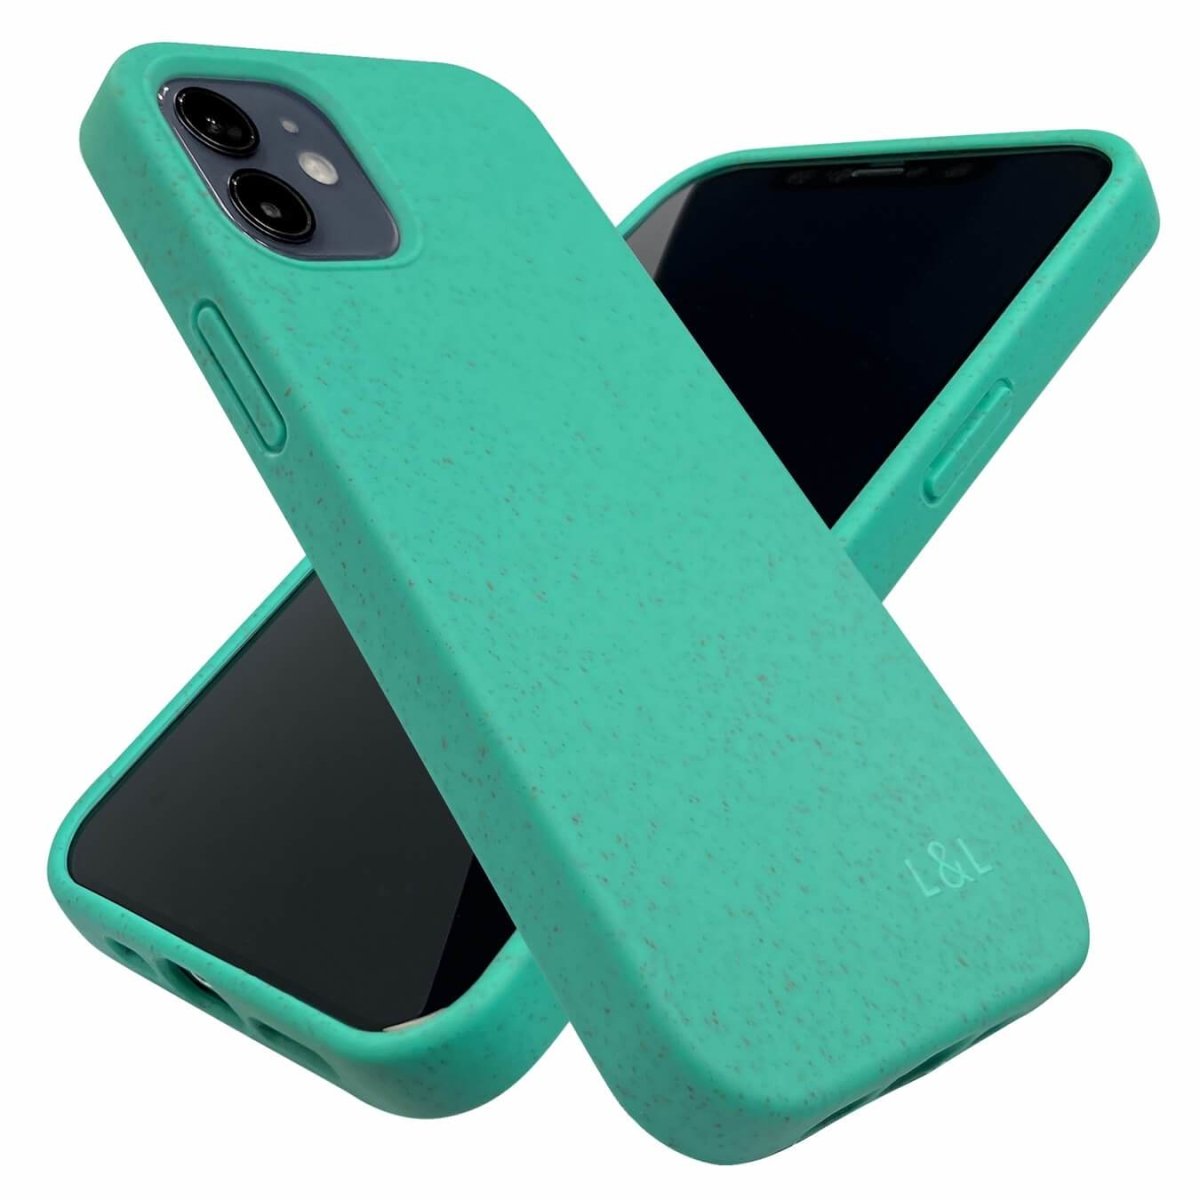 Biodegradable iPhone 12 Mini Case - Mint - Loam & Lore